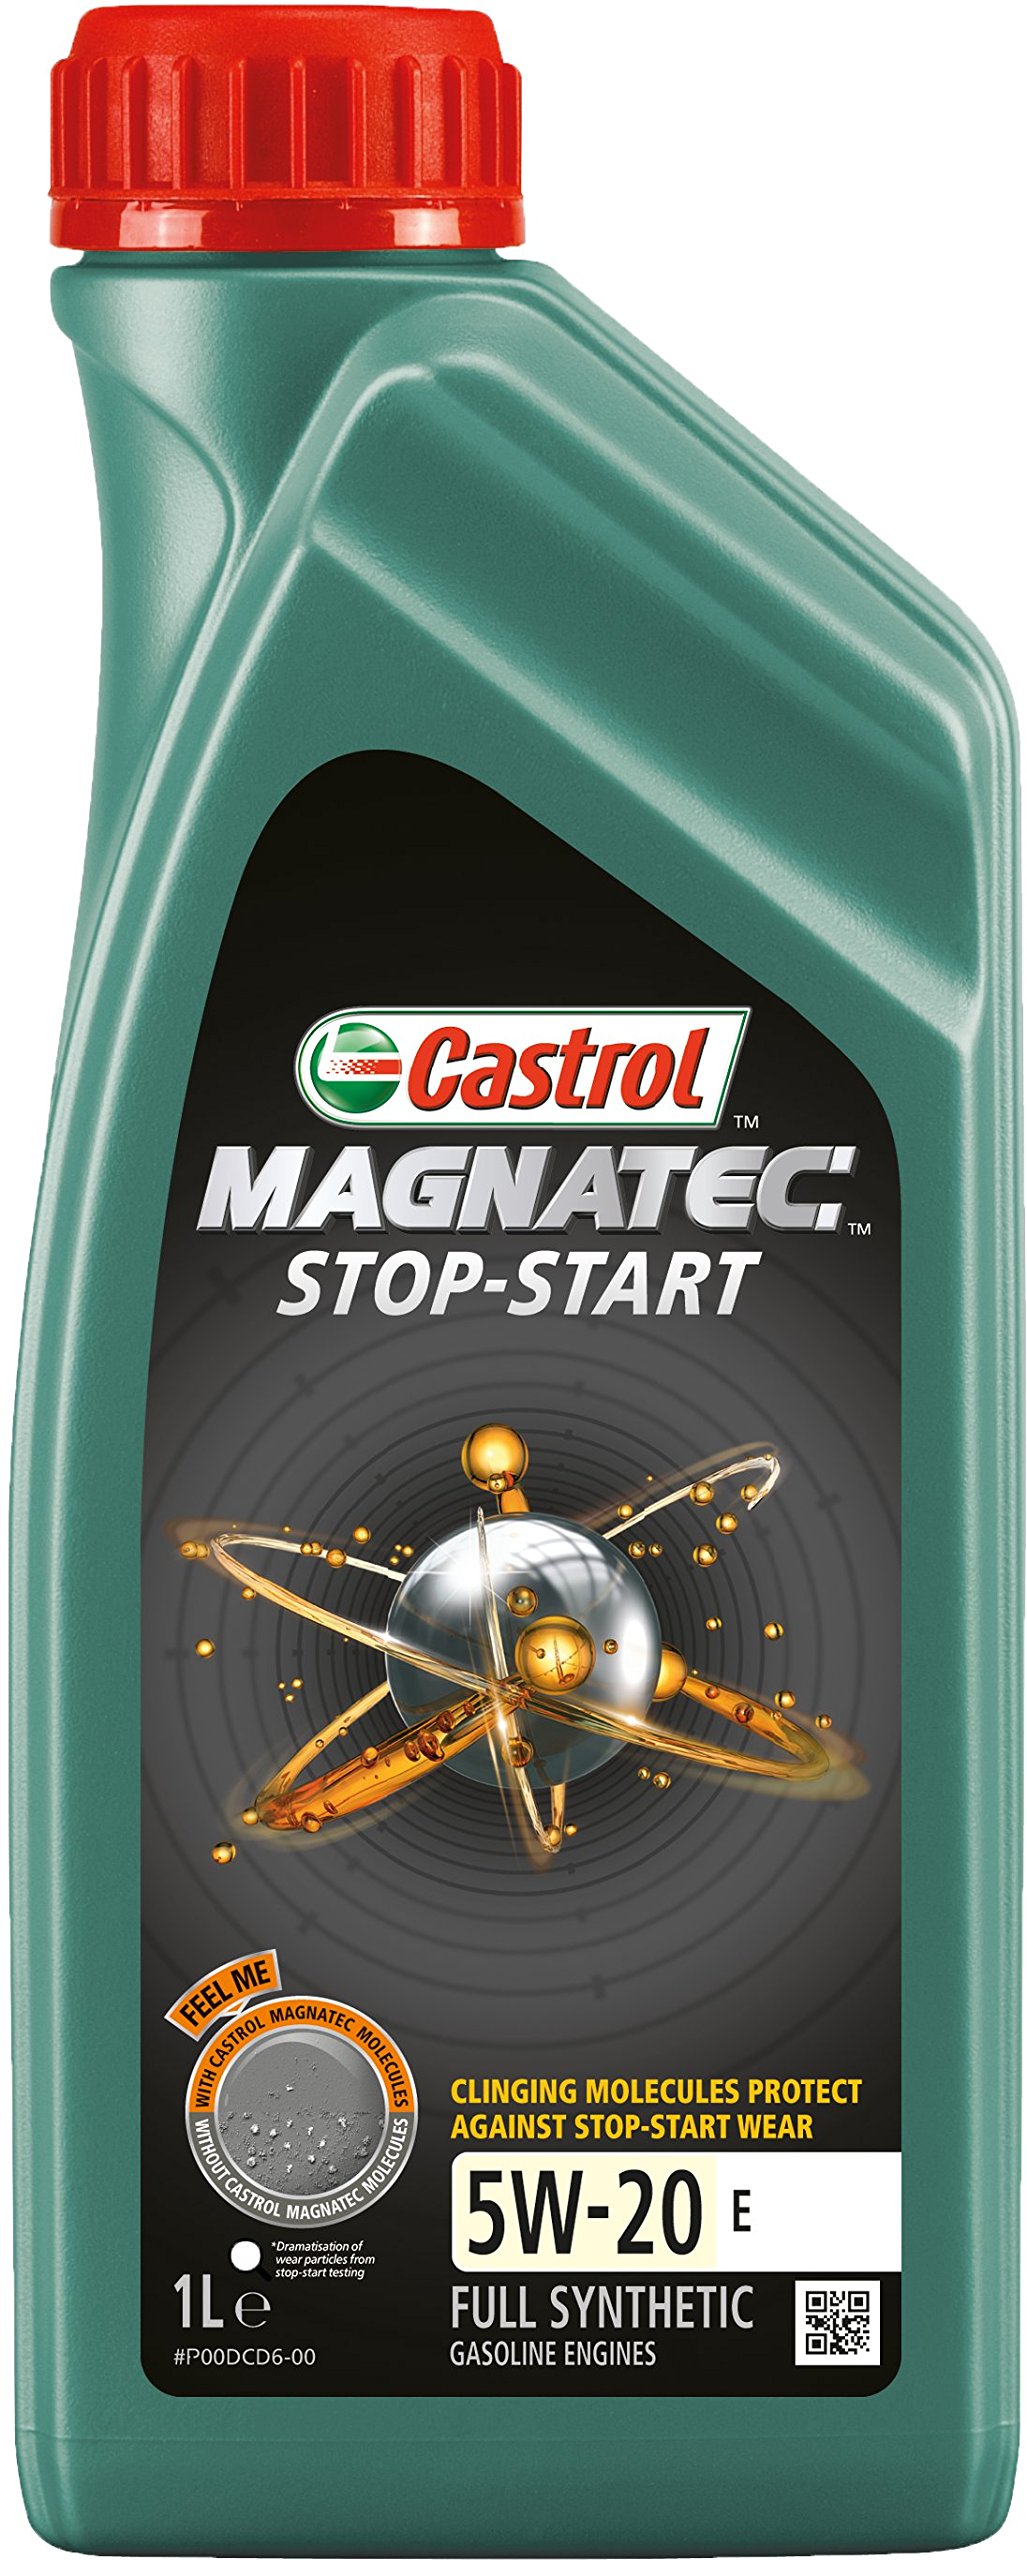 CASTROL 159F38 Magnatec Stop-Start 5W-20 E 1L von Castrol